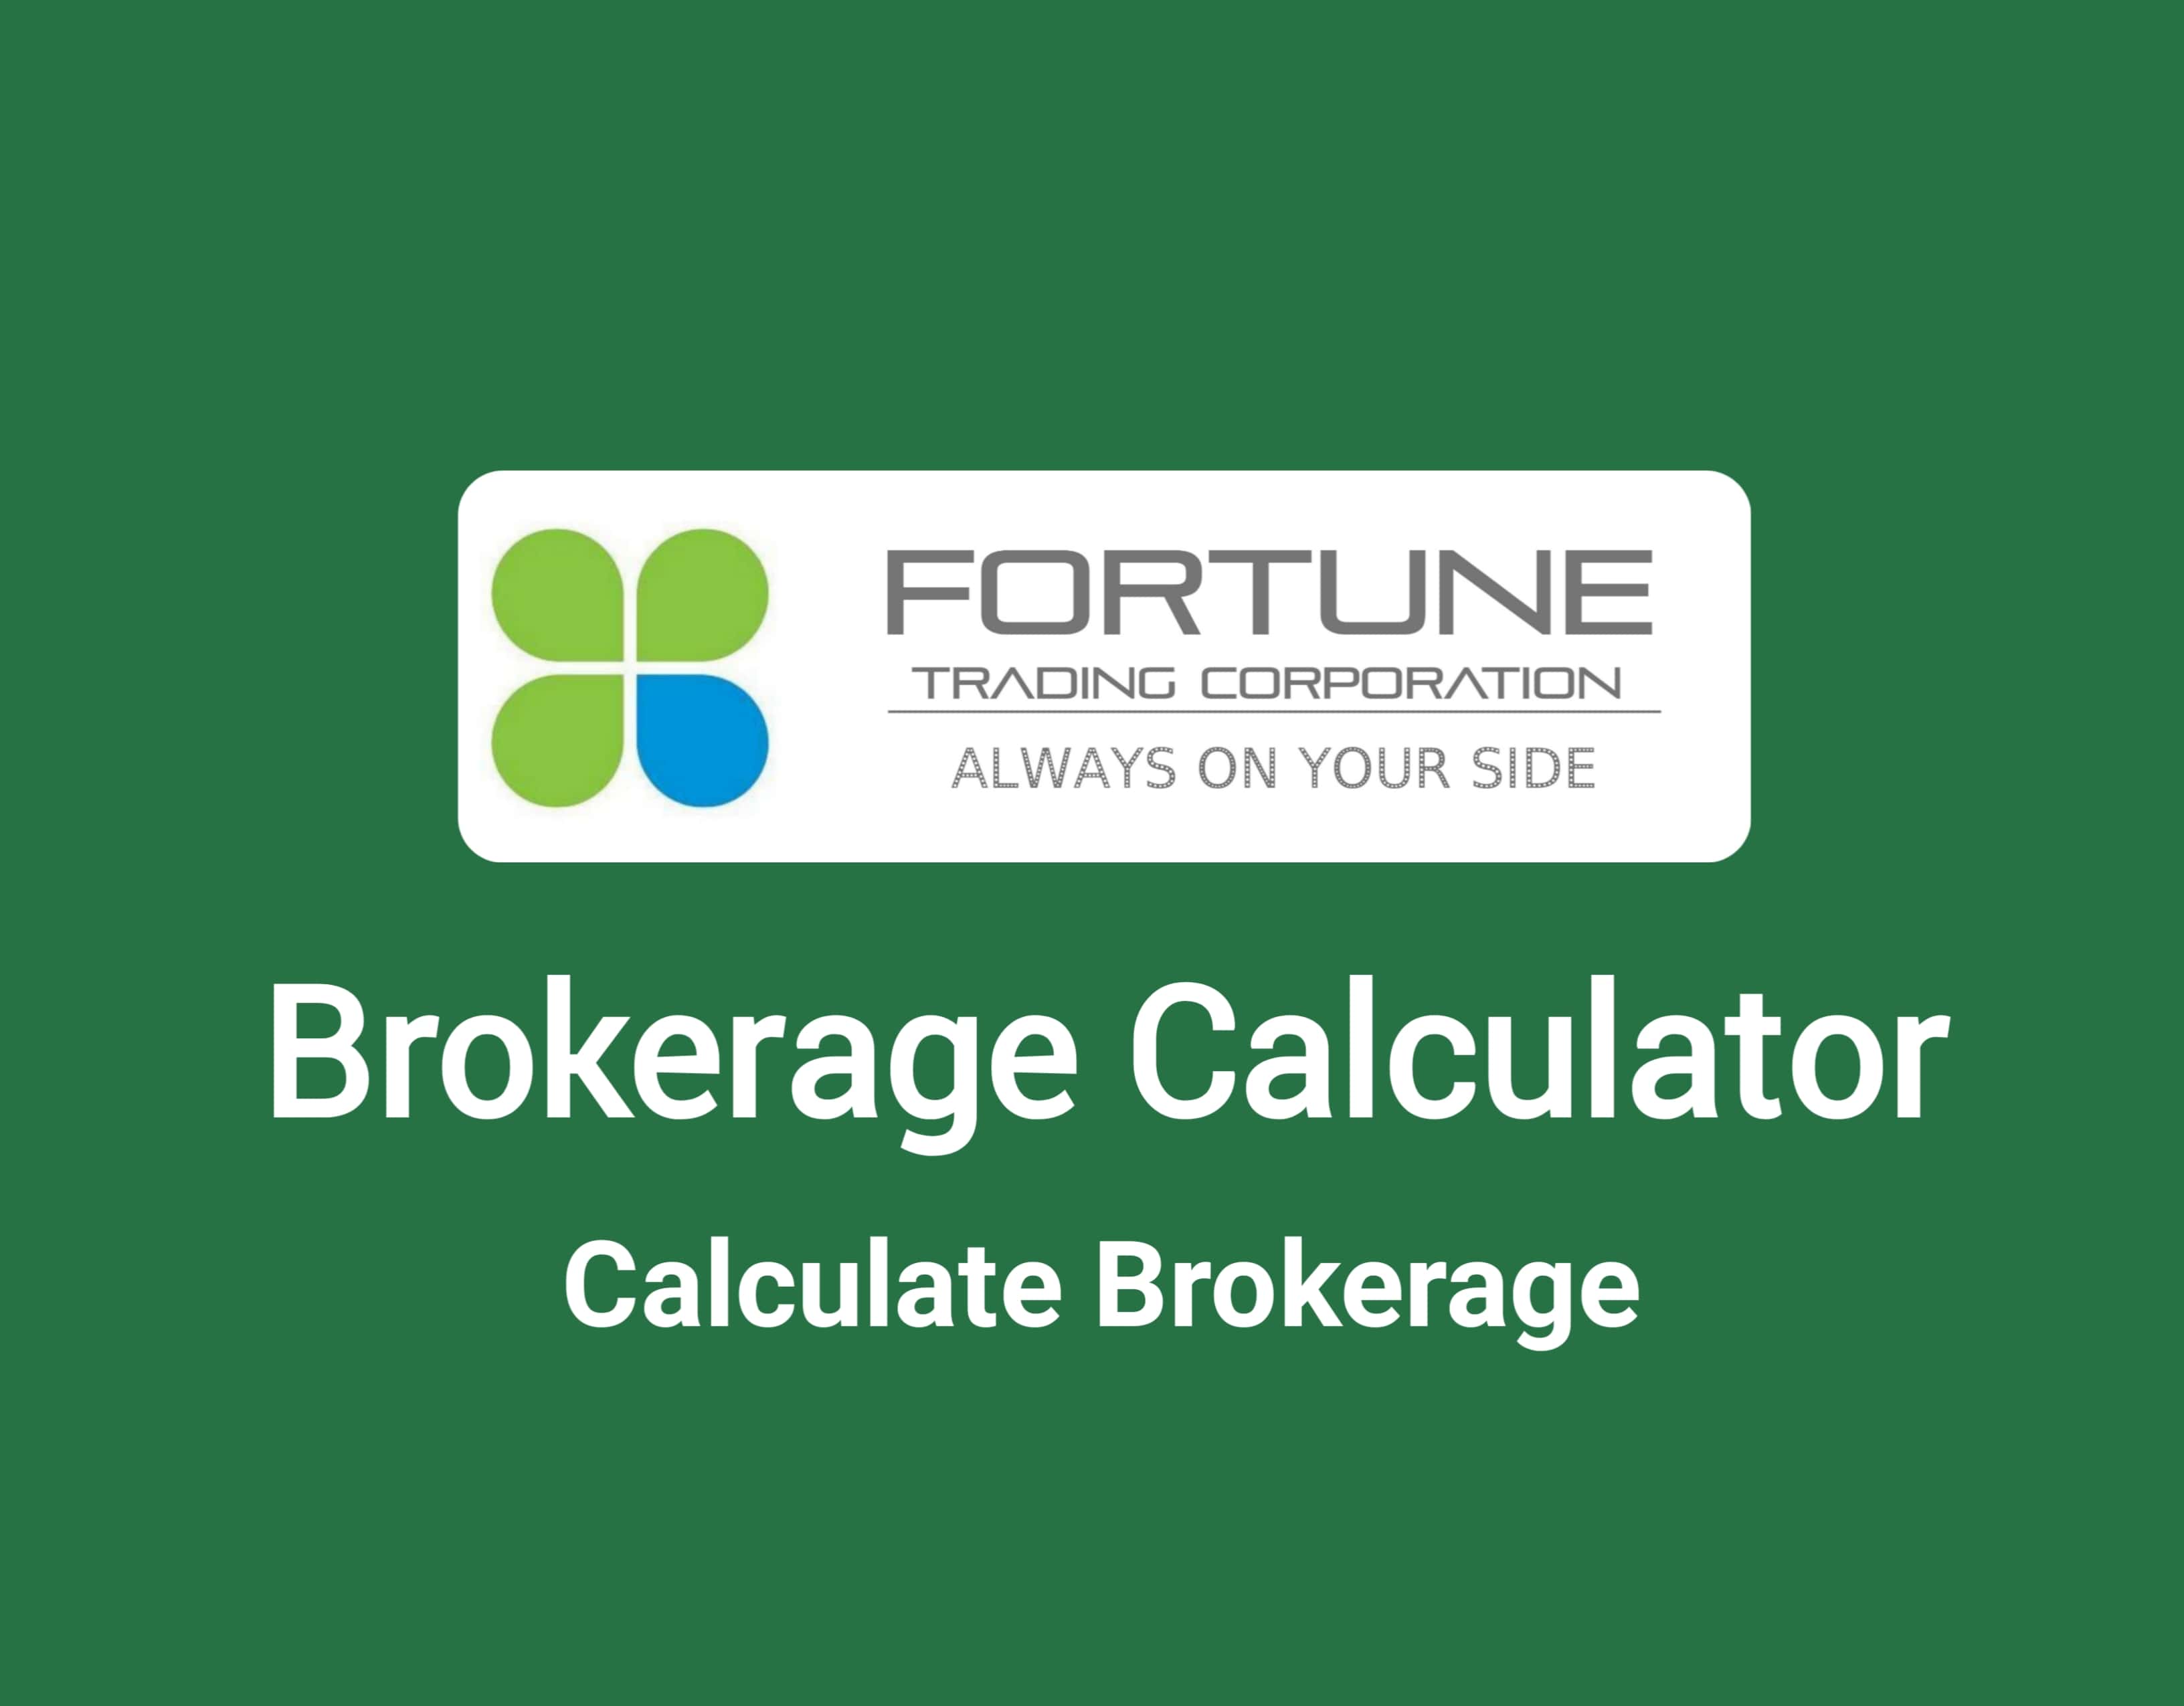 Fortune Trading Brokerage Calculator